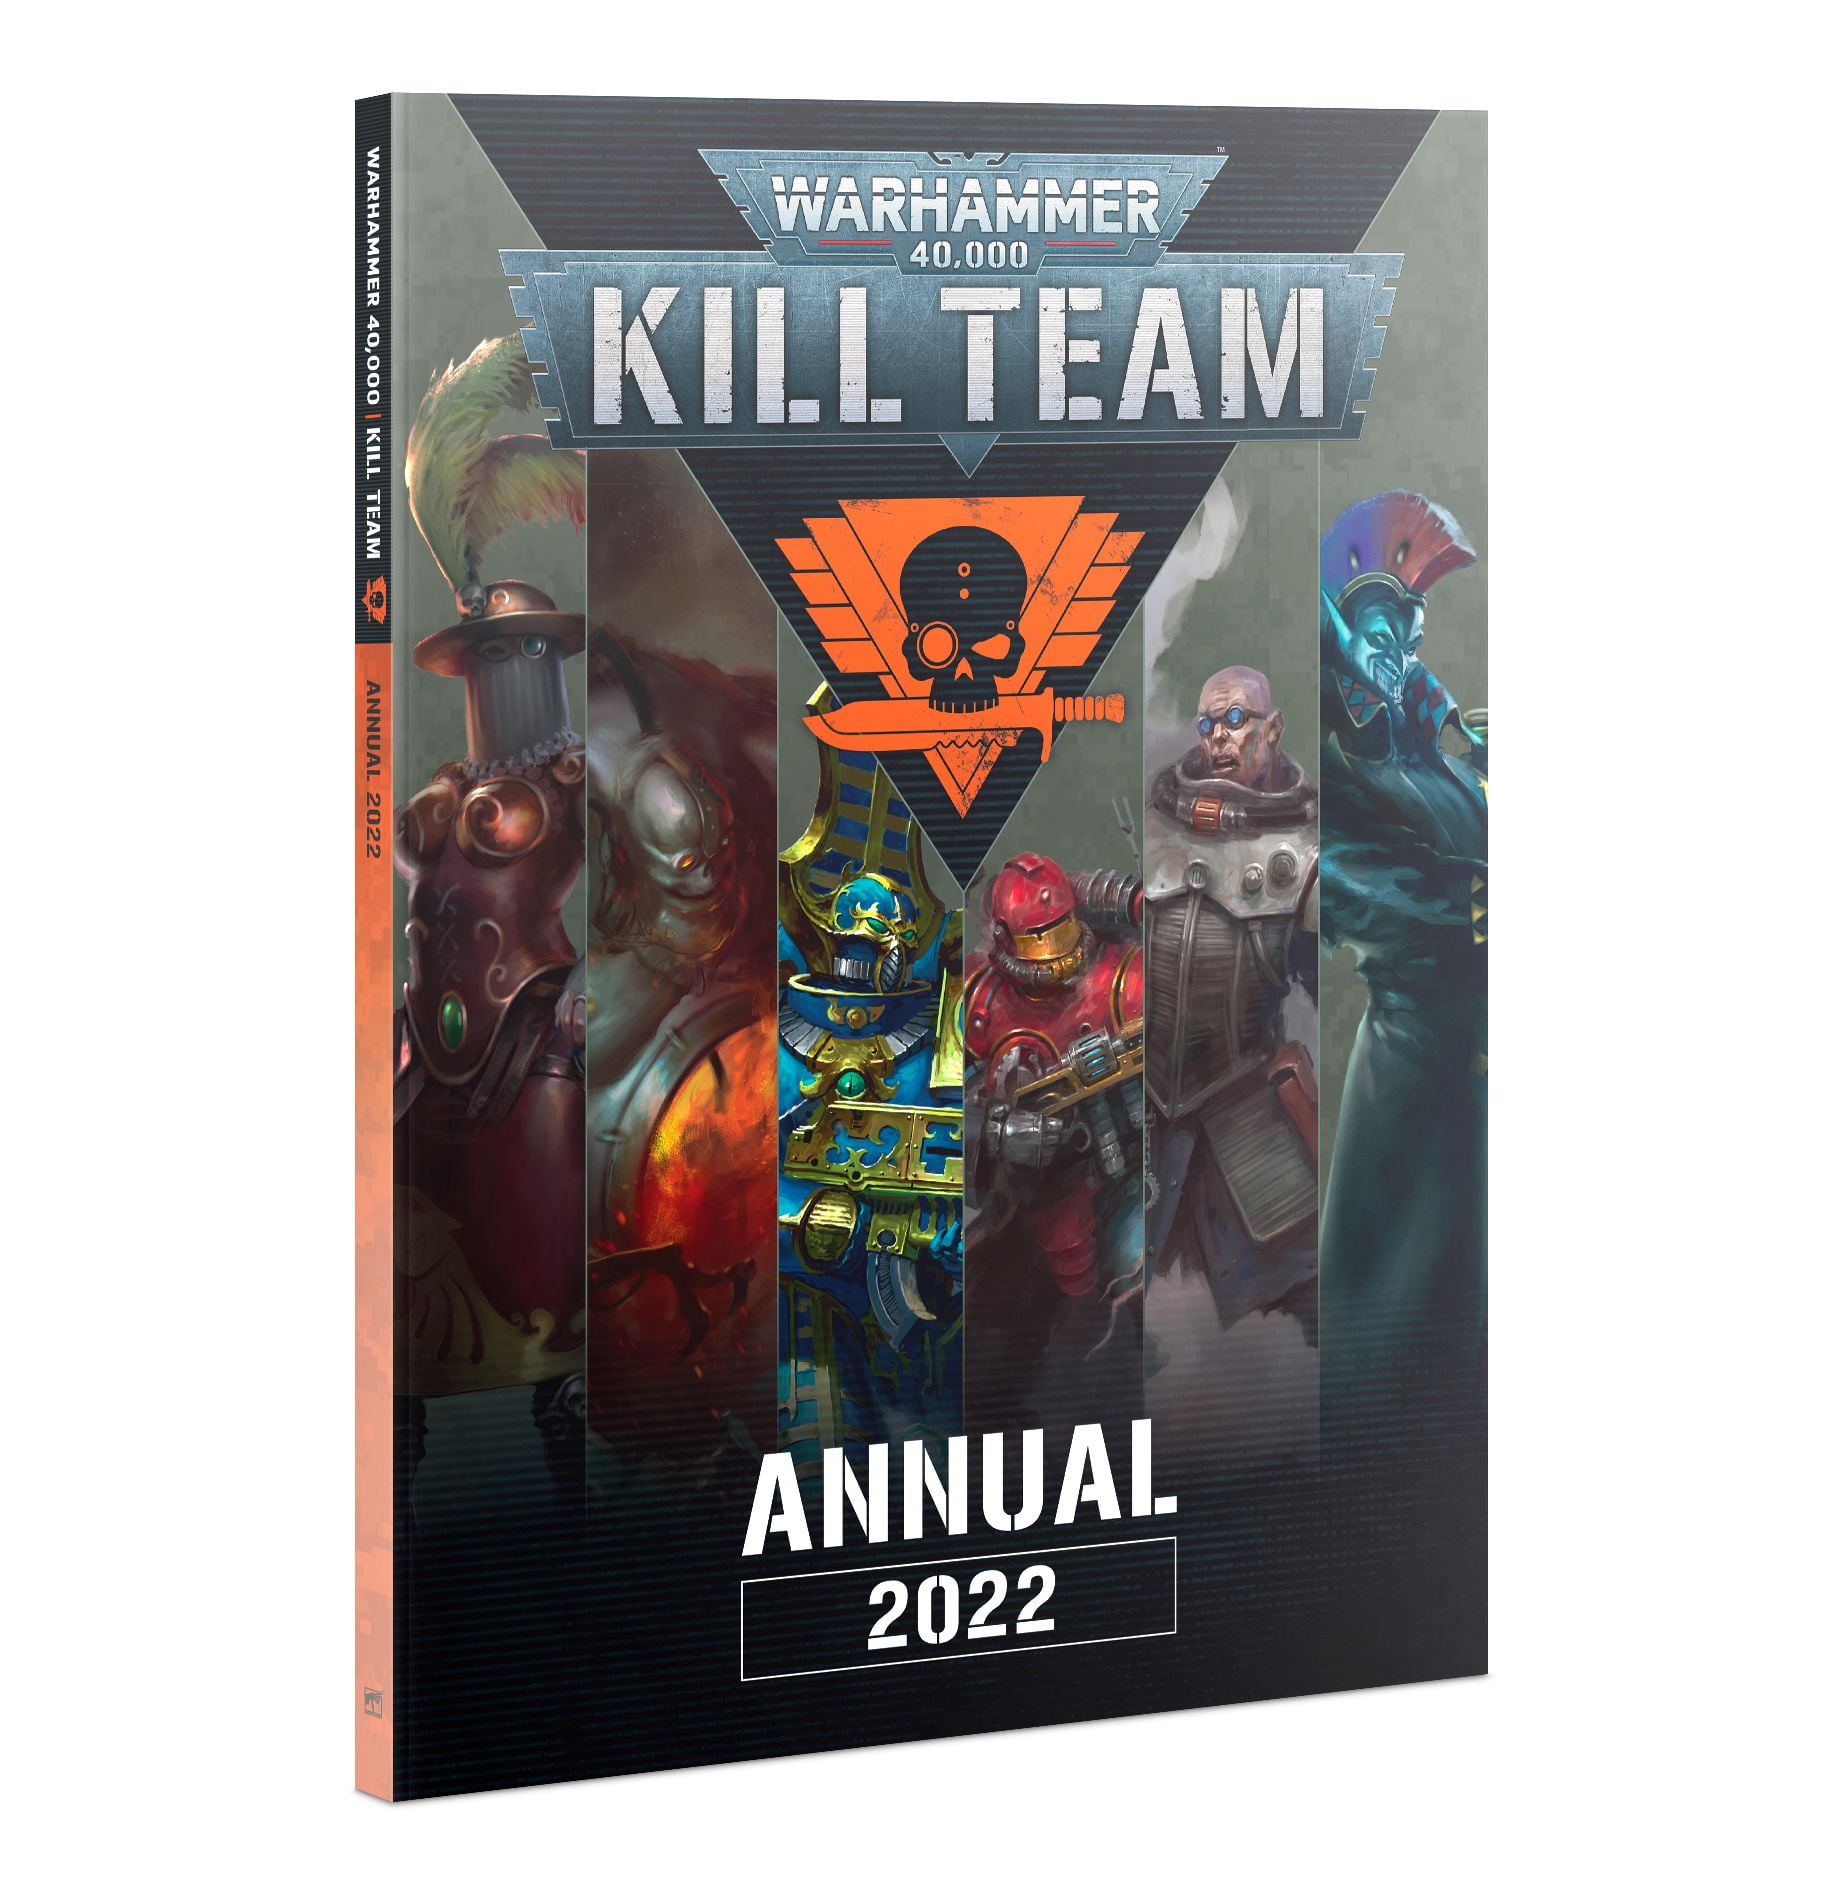 Kill Team: Annual 2022 - English